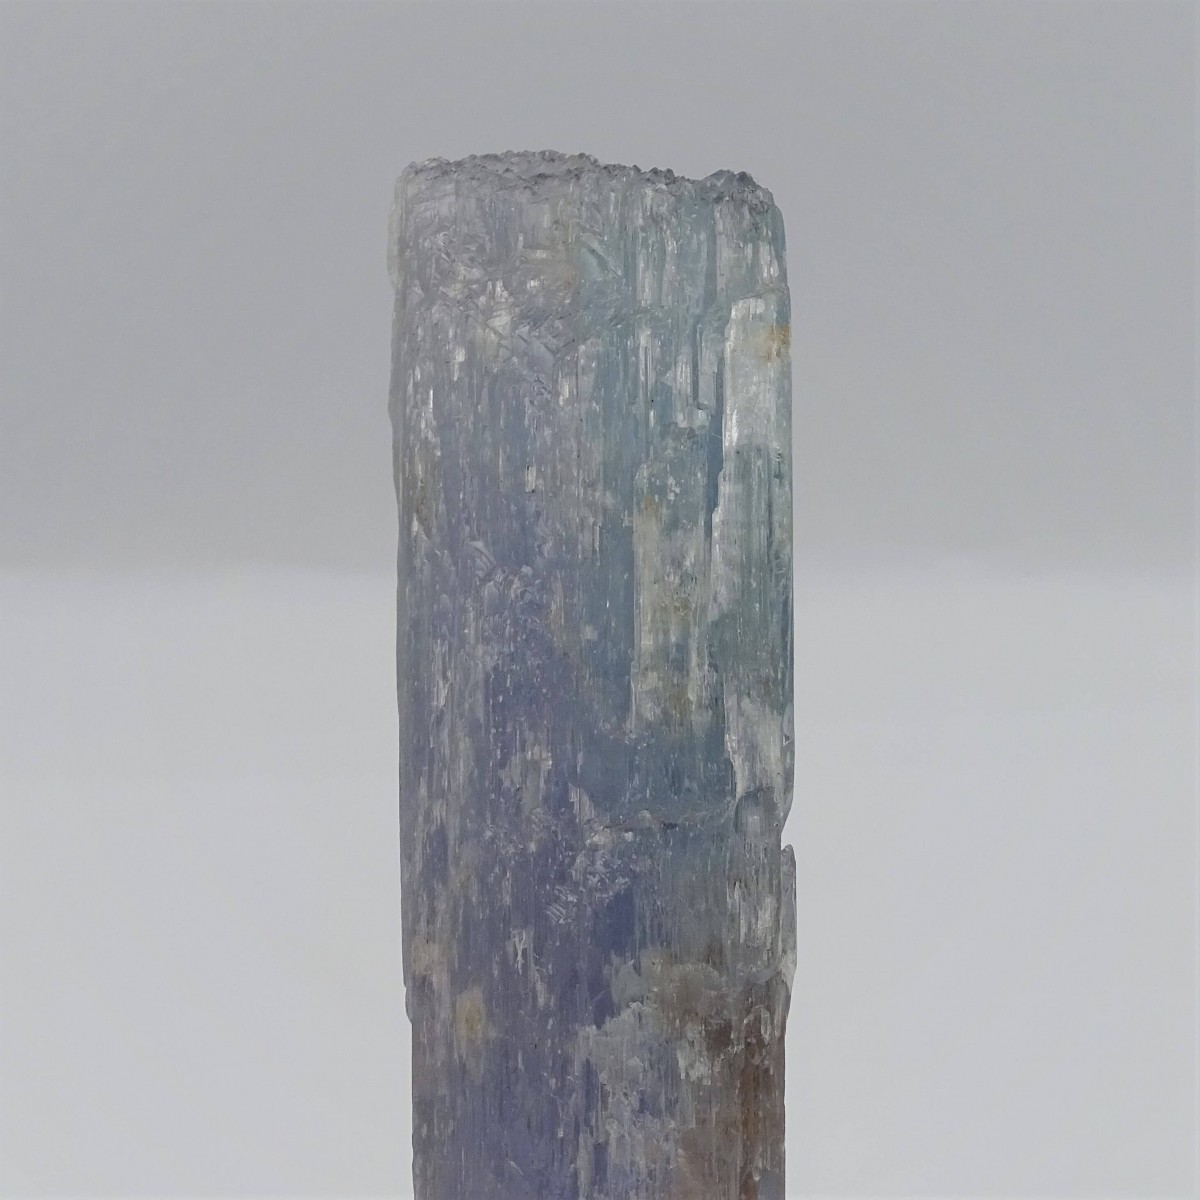 Kunzit natürlich, sehr seltene Kristallfarbe, 632g, Afghanistan